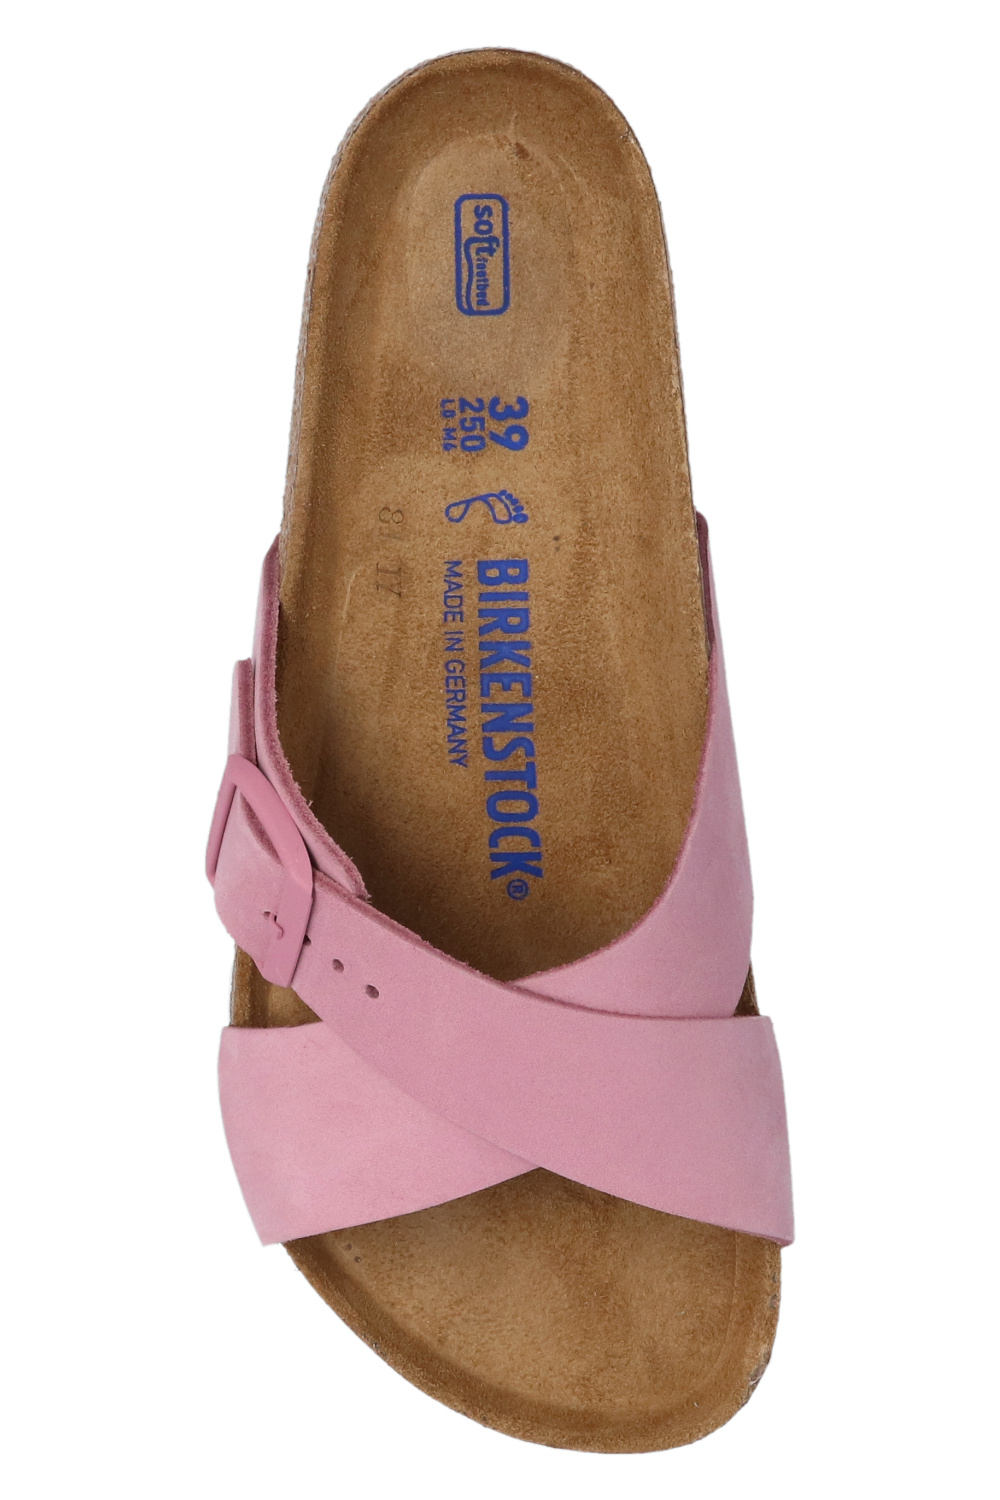 Louis Vuitton Pink Flip Flops Sandals Shoes EURO 39, US 8.5, 9